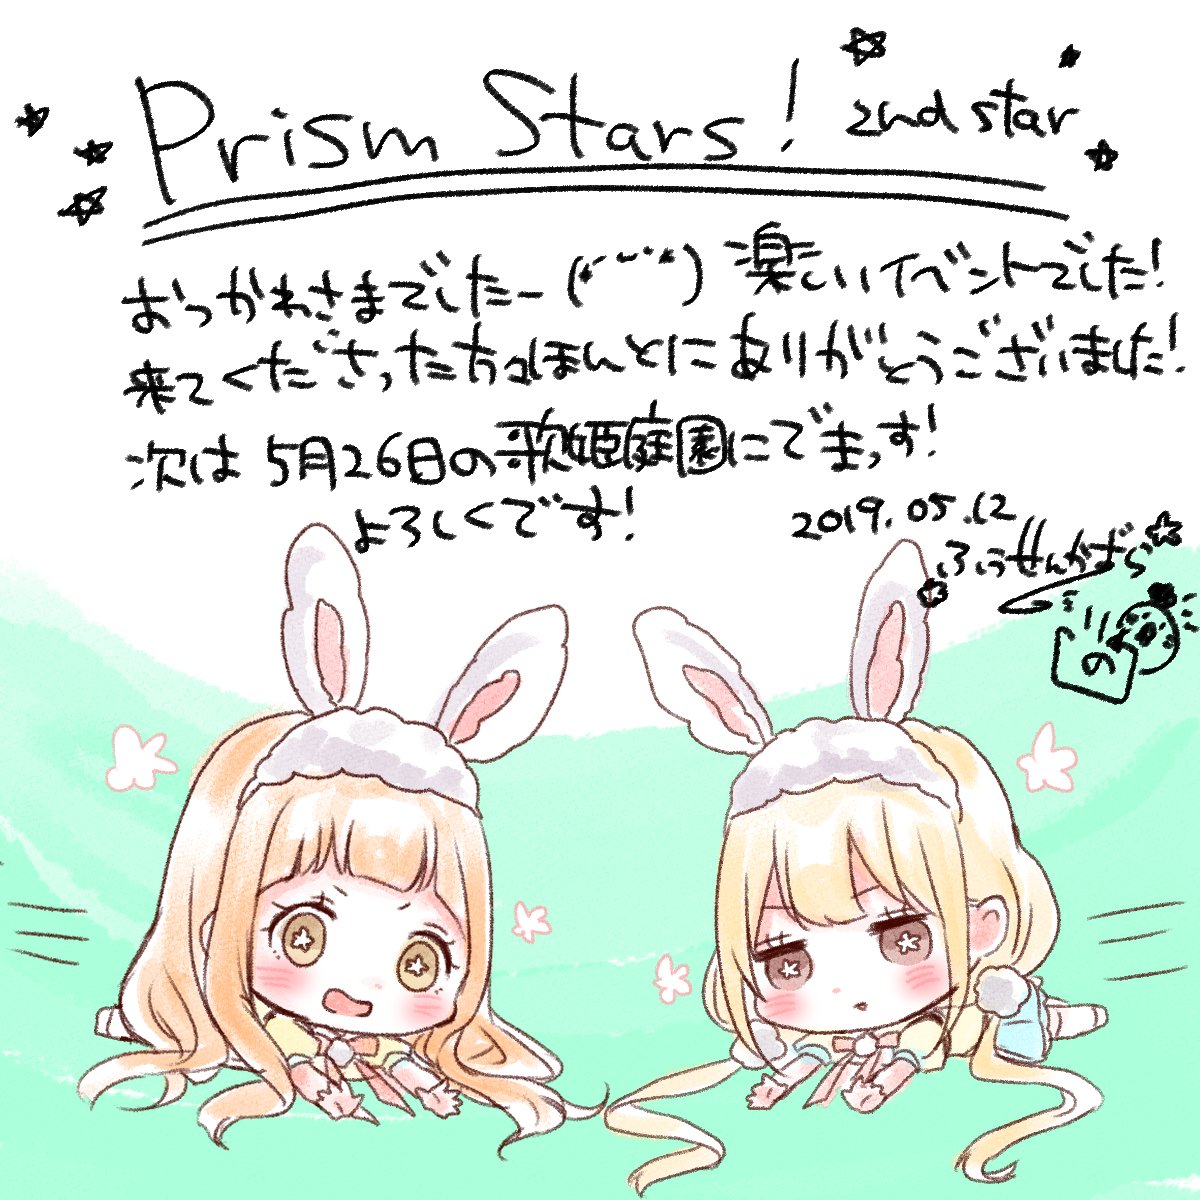 PrismStars!!お疲れ様でした!(*'ω`*)!
是非来年も参加したいです!!(*`ω` *)クレープ美味しかった!!
#prismstars 